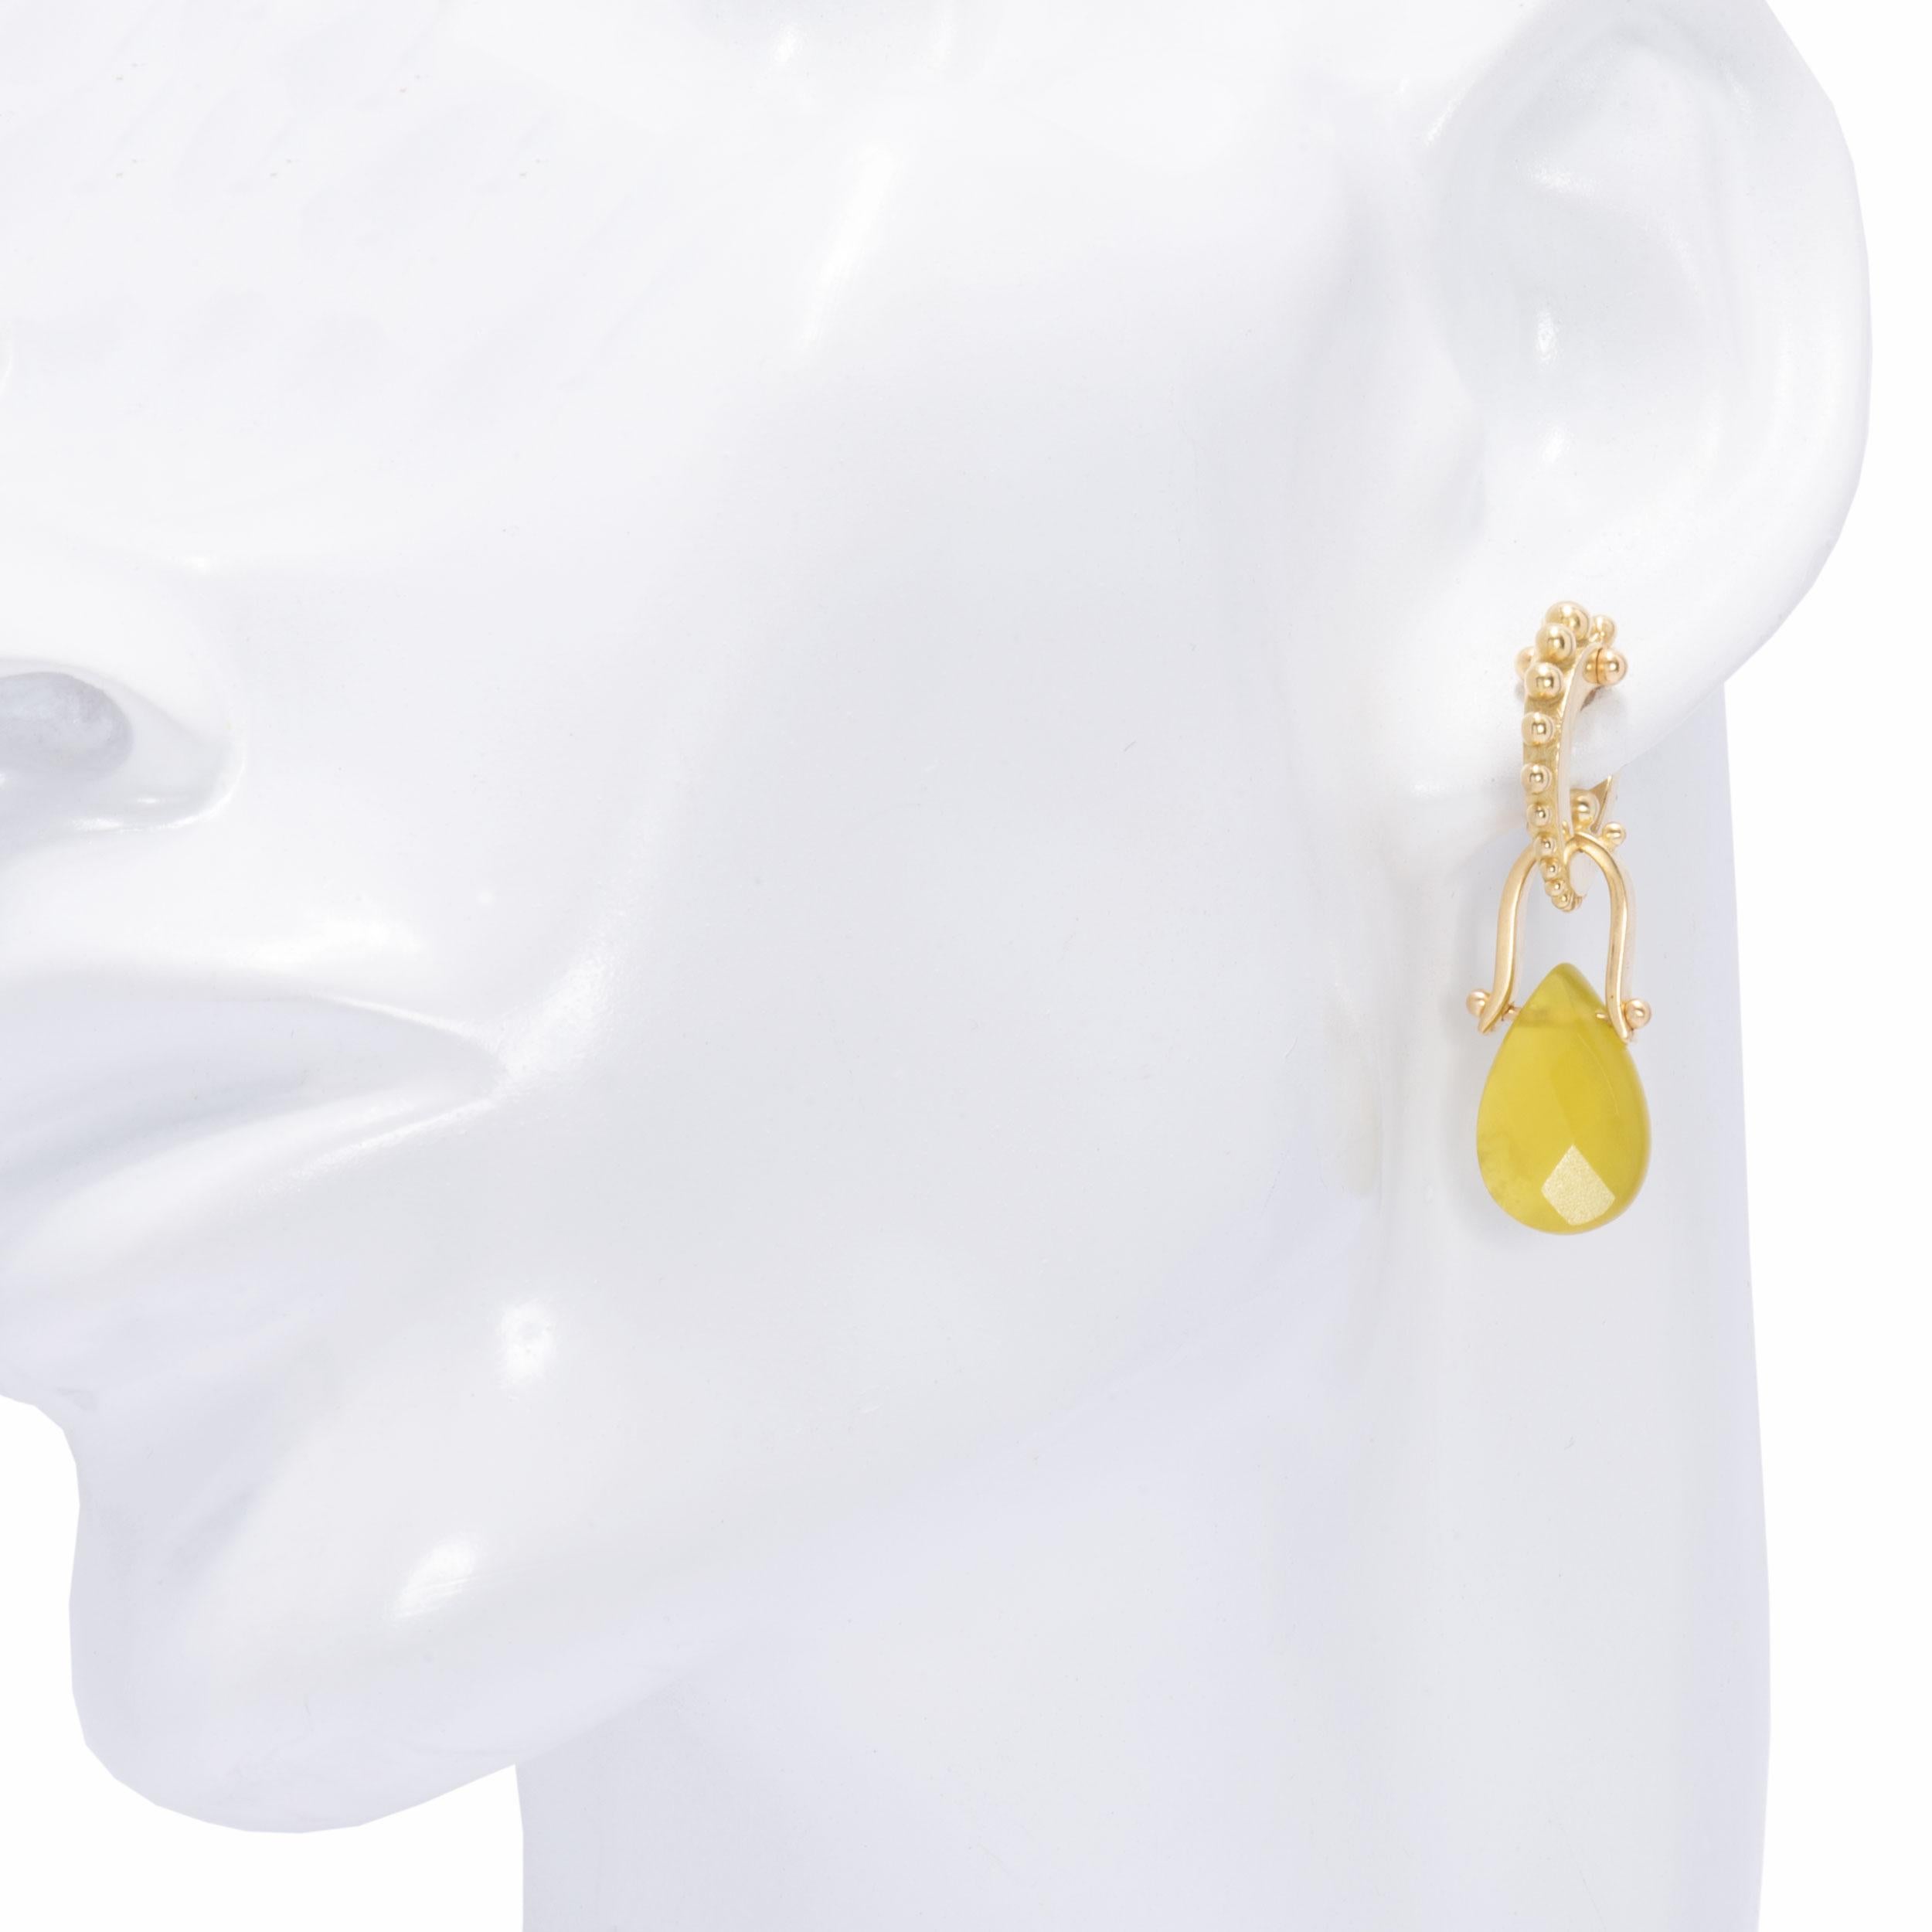 Serpentine Teardrop Oblio Earrings in 18 Karat Gold In New Condition For Sale In Santa Fe, NM